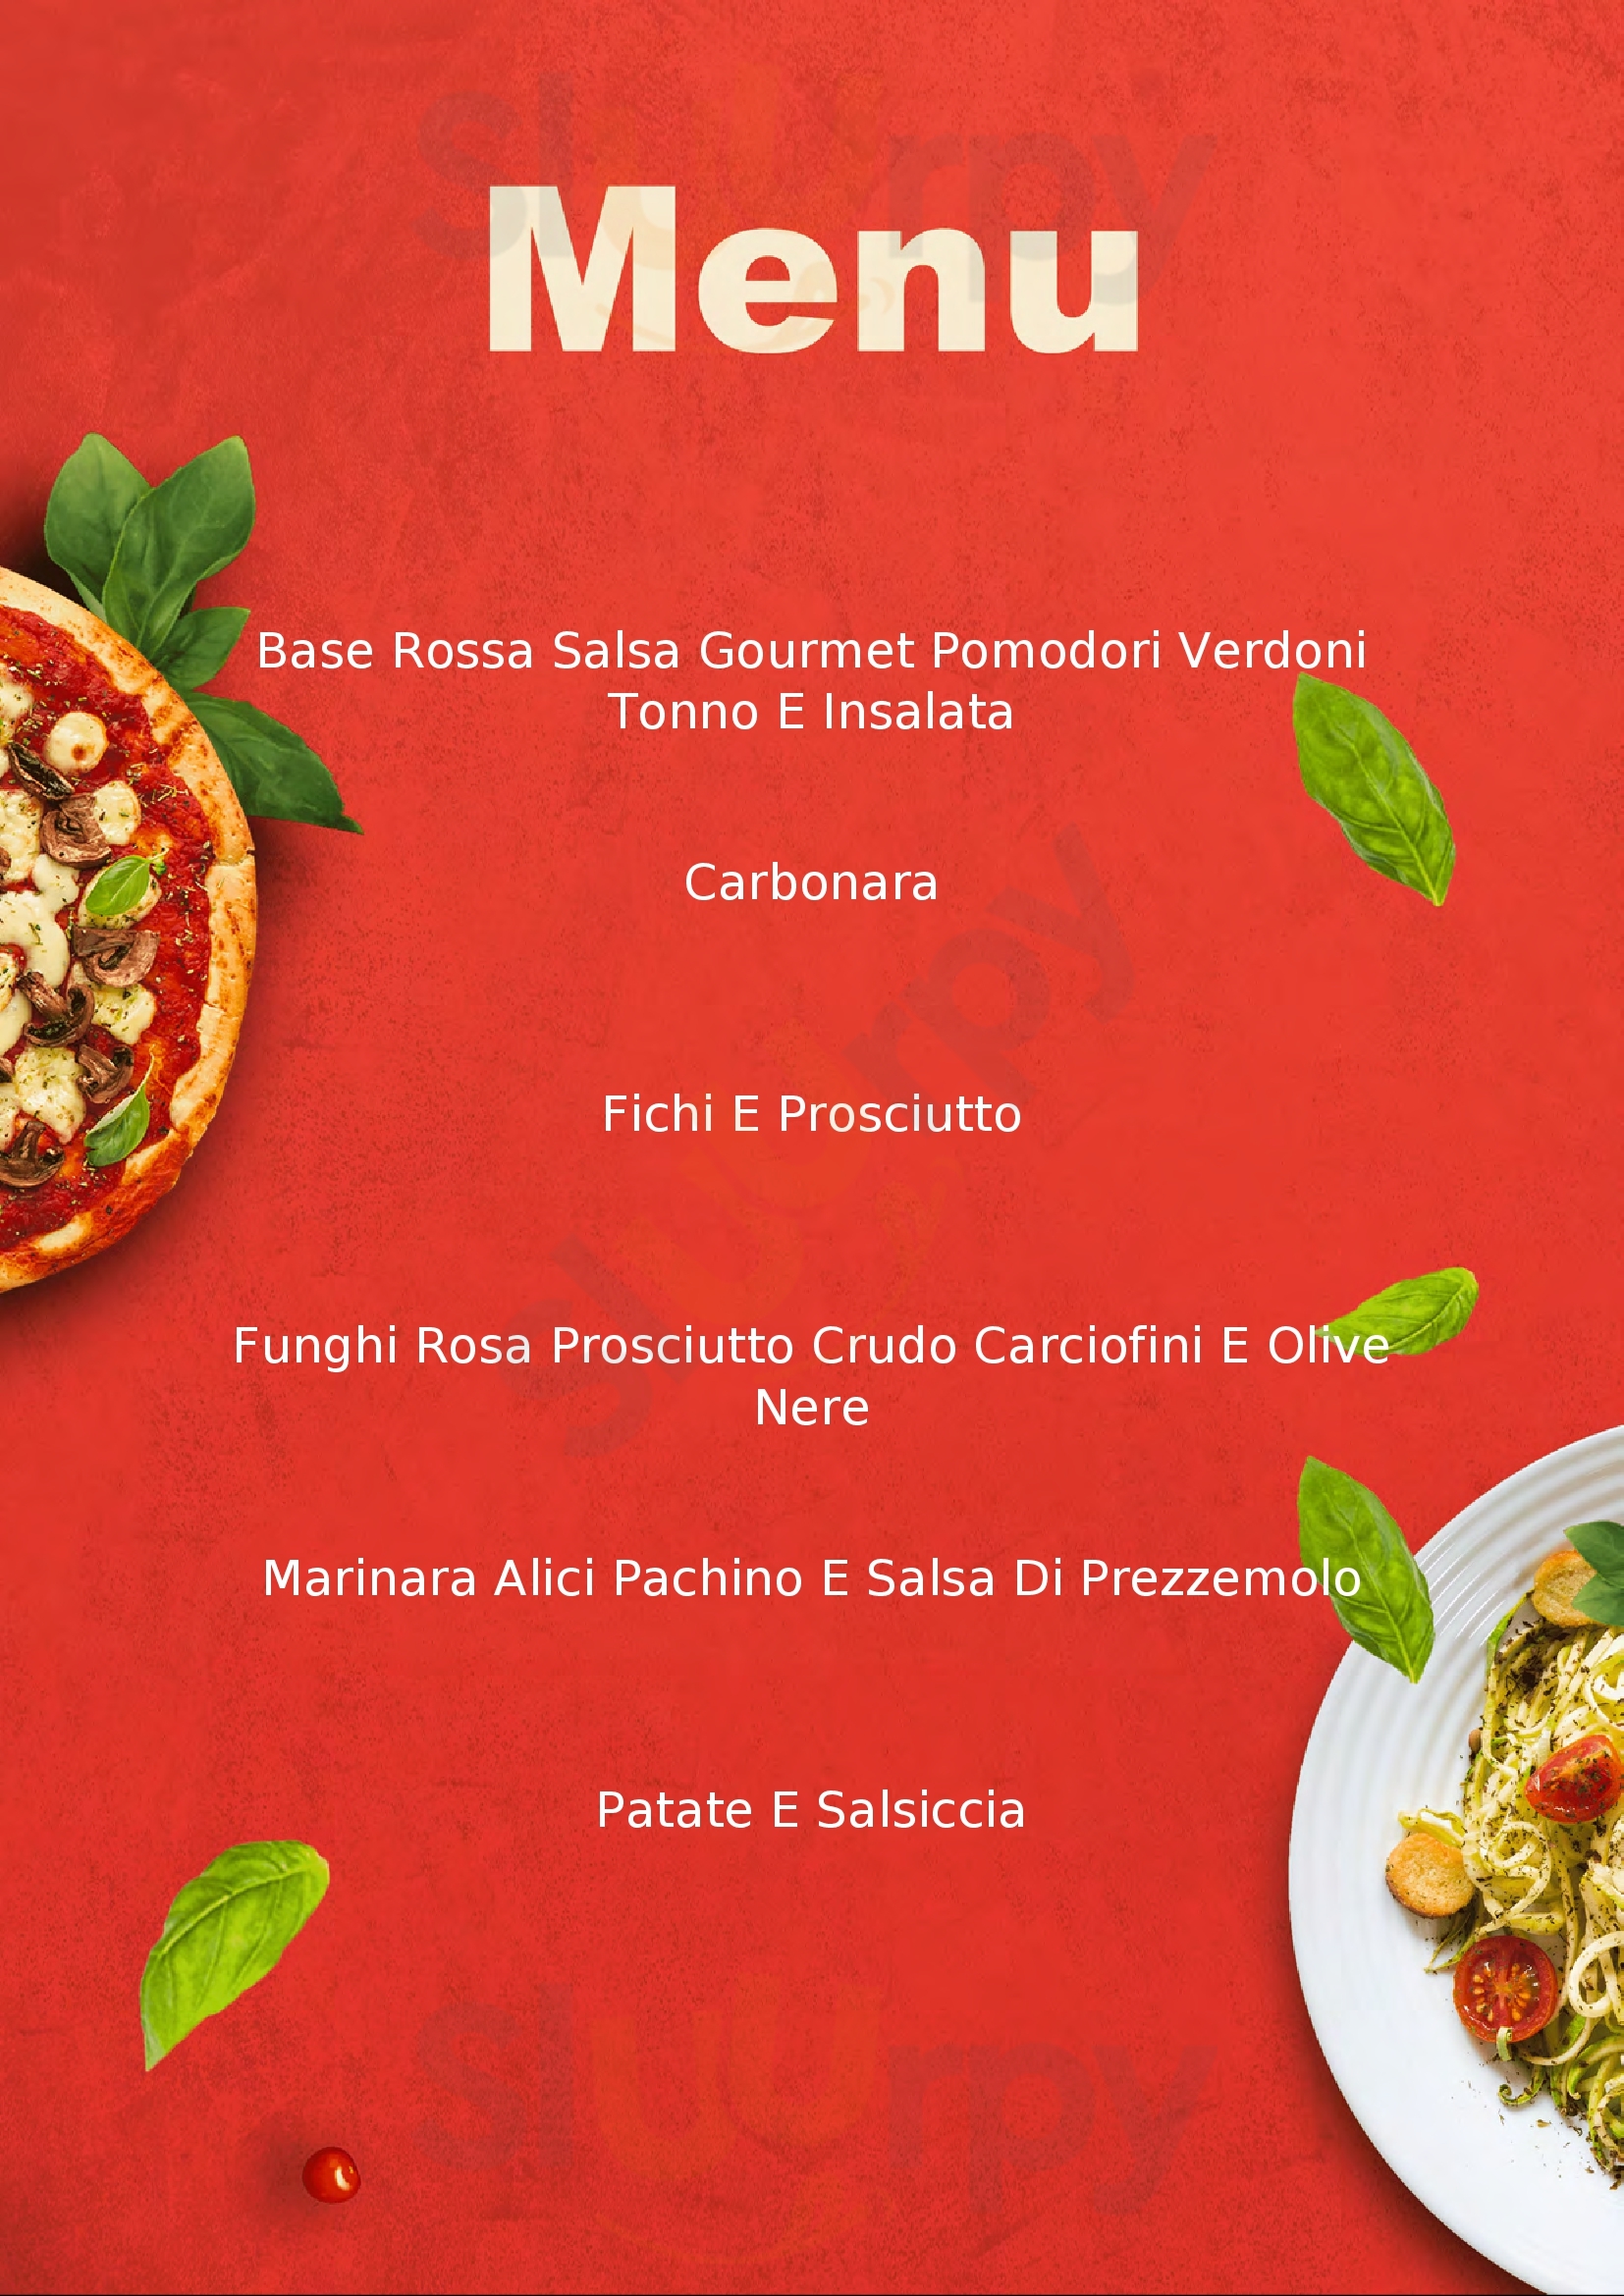 Alberto's Pizza Roma menù 1 pagina